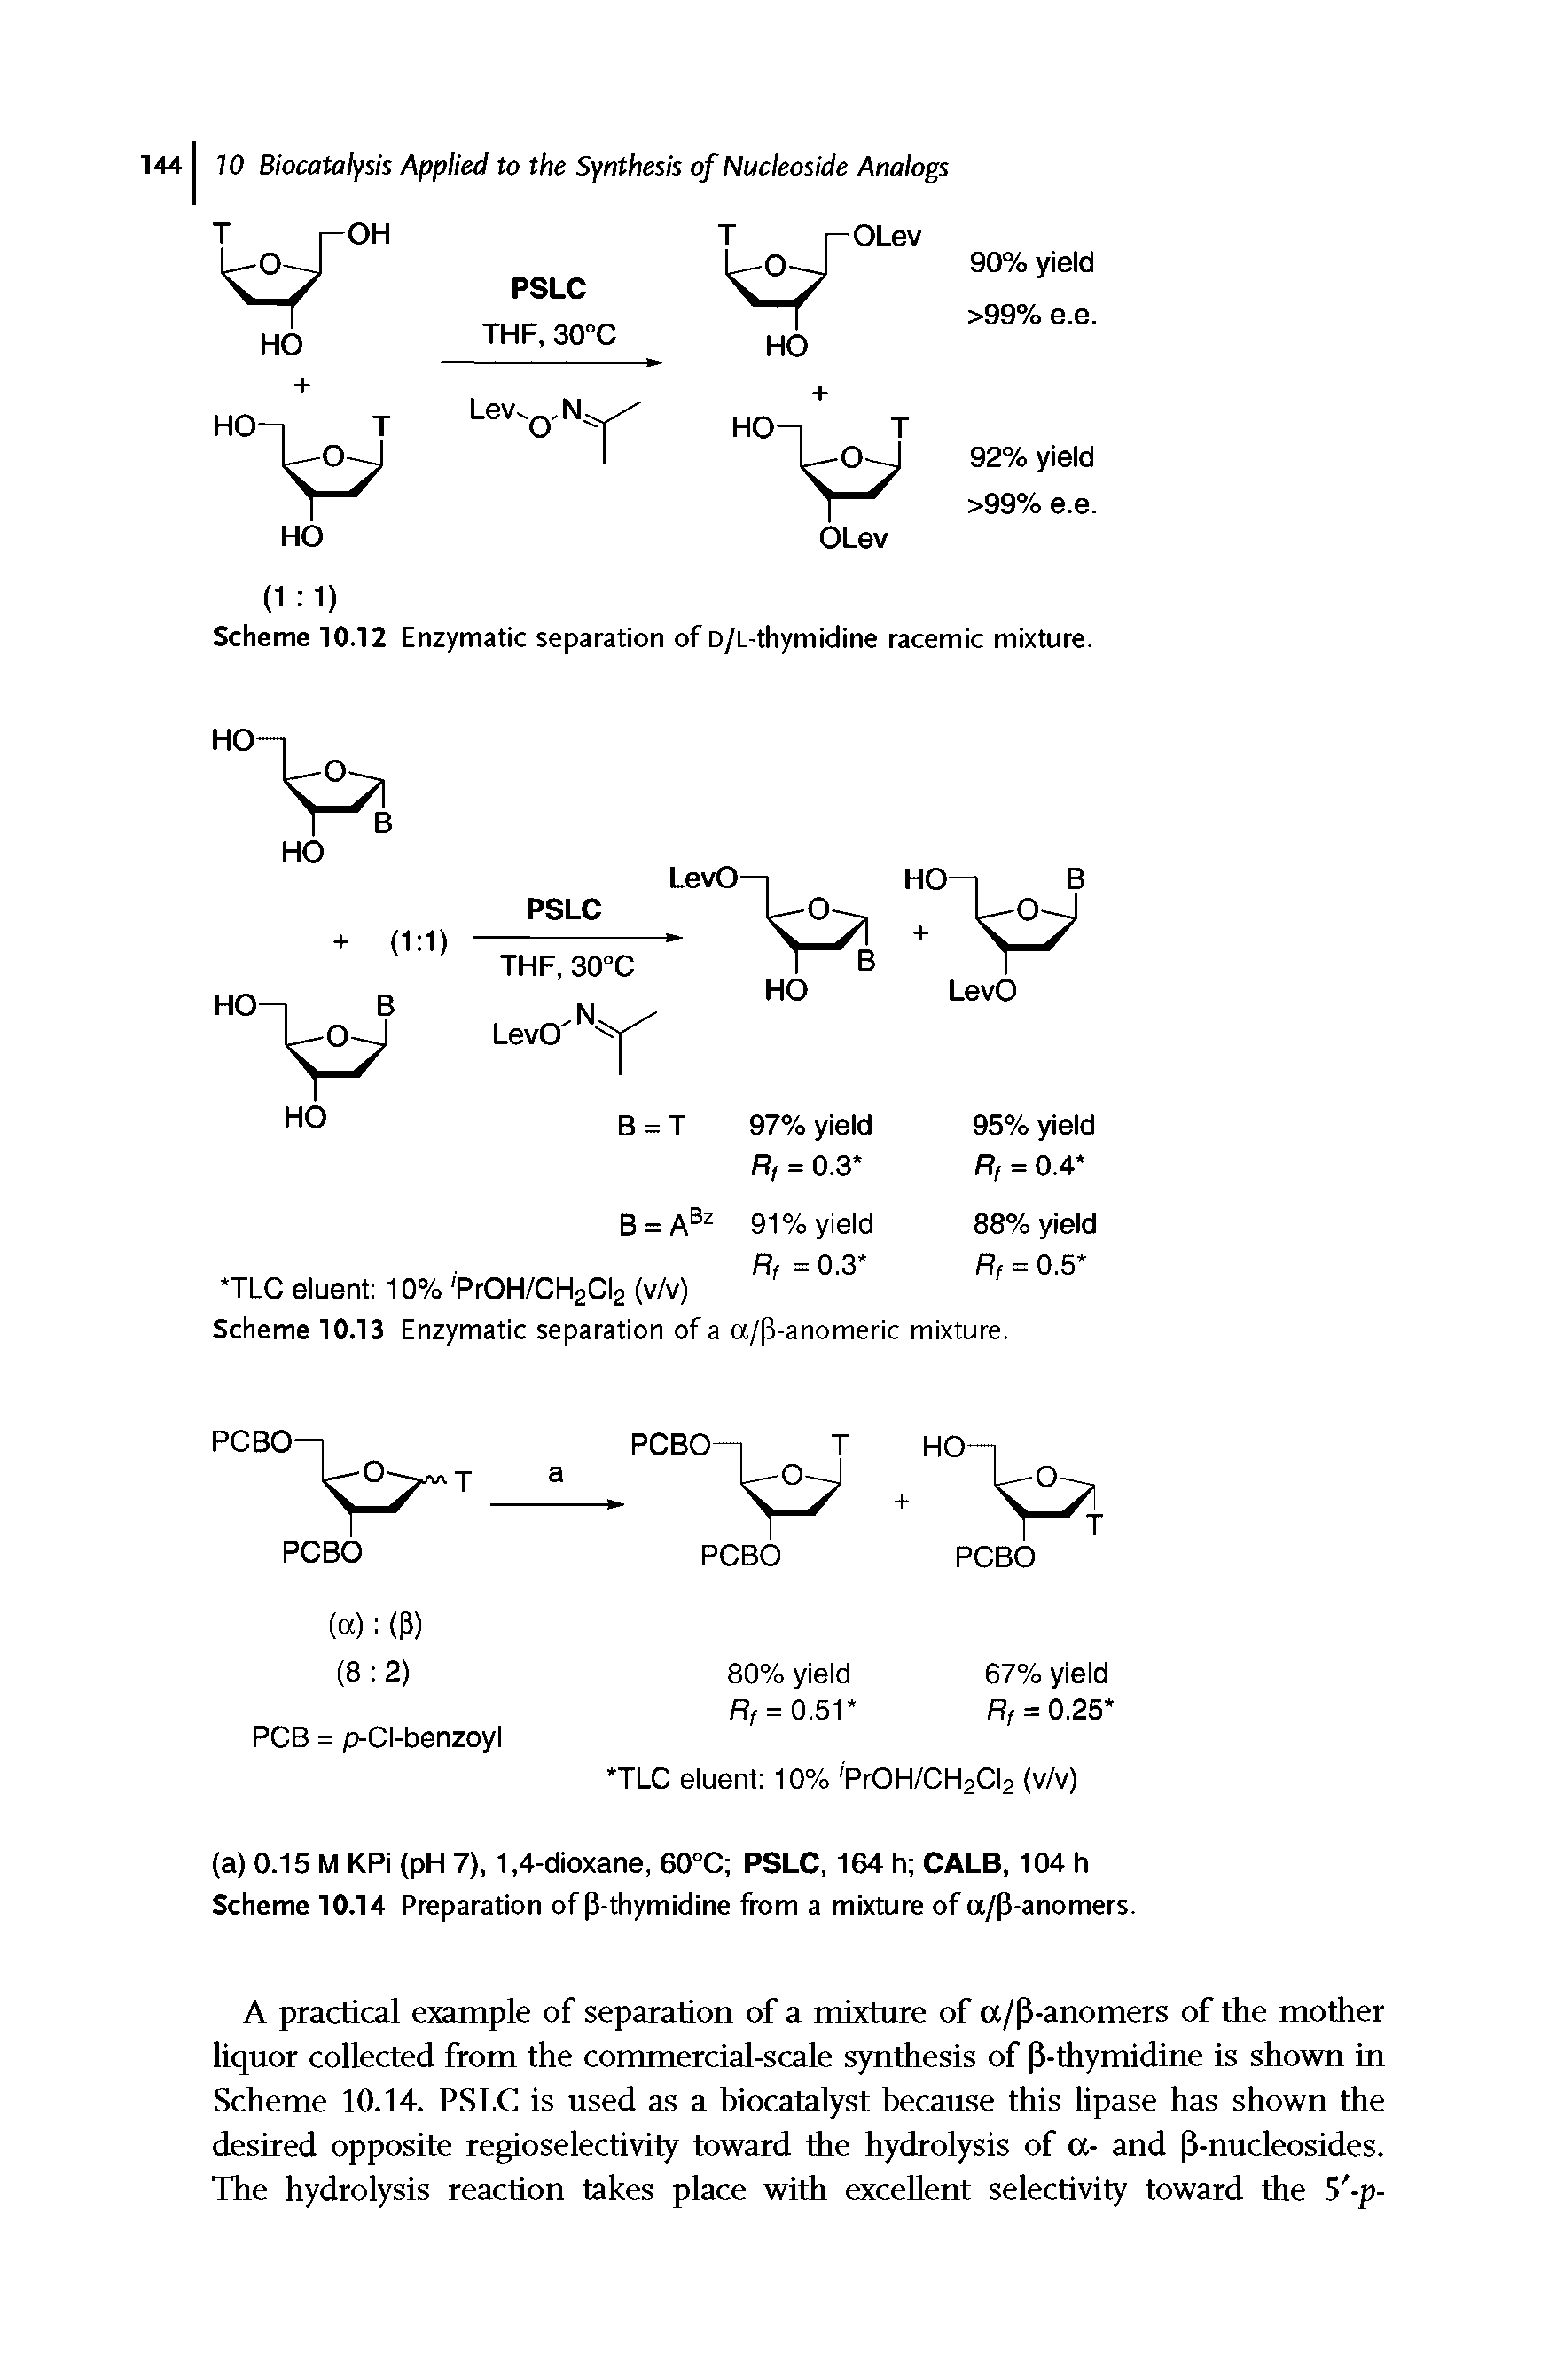 Scheme 10.12 Enzymatic separation of D/L-thymidine racemic mixture.